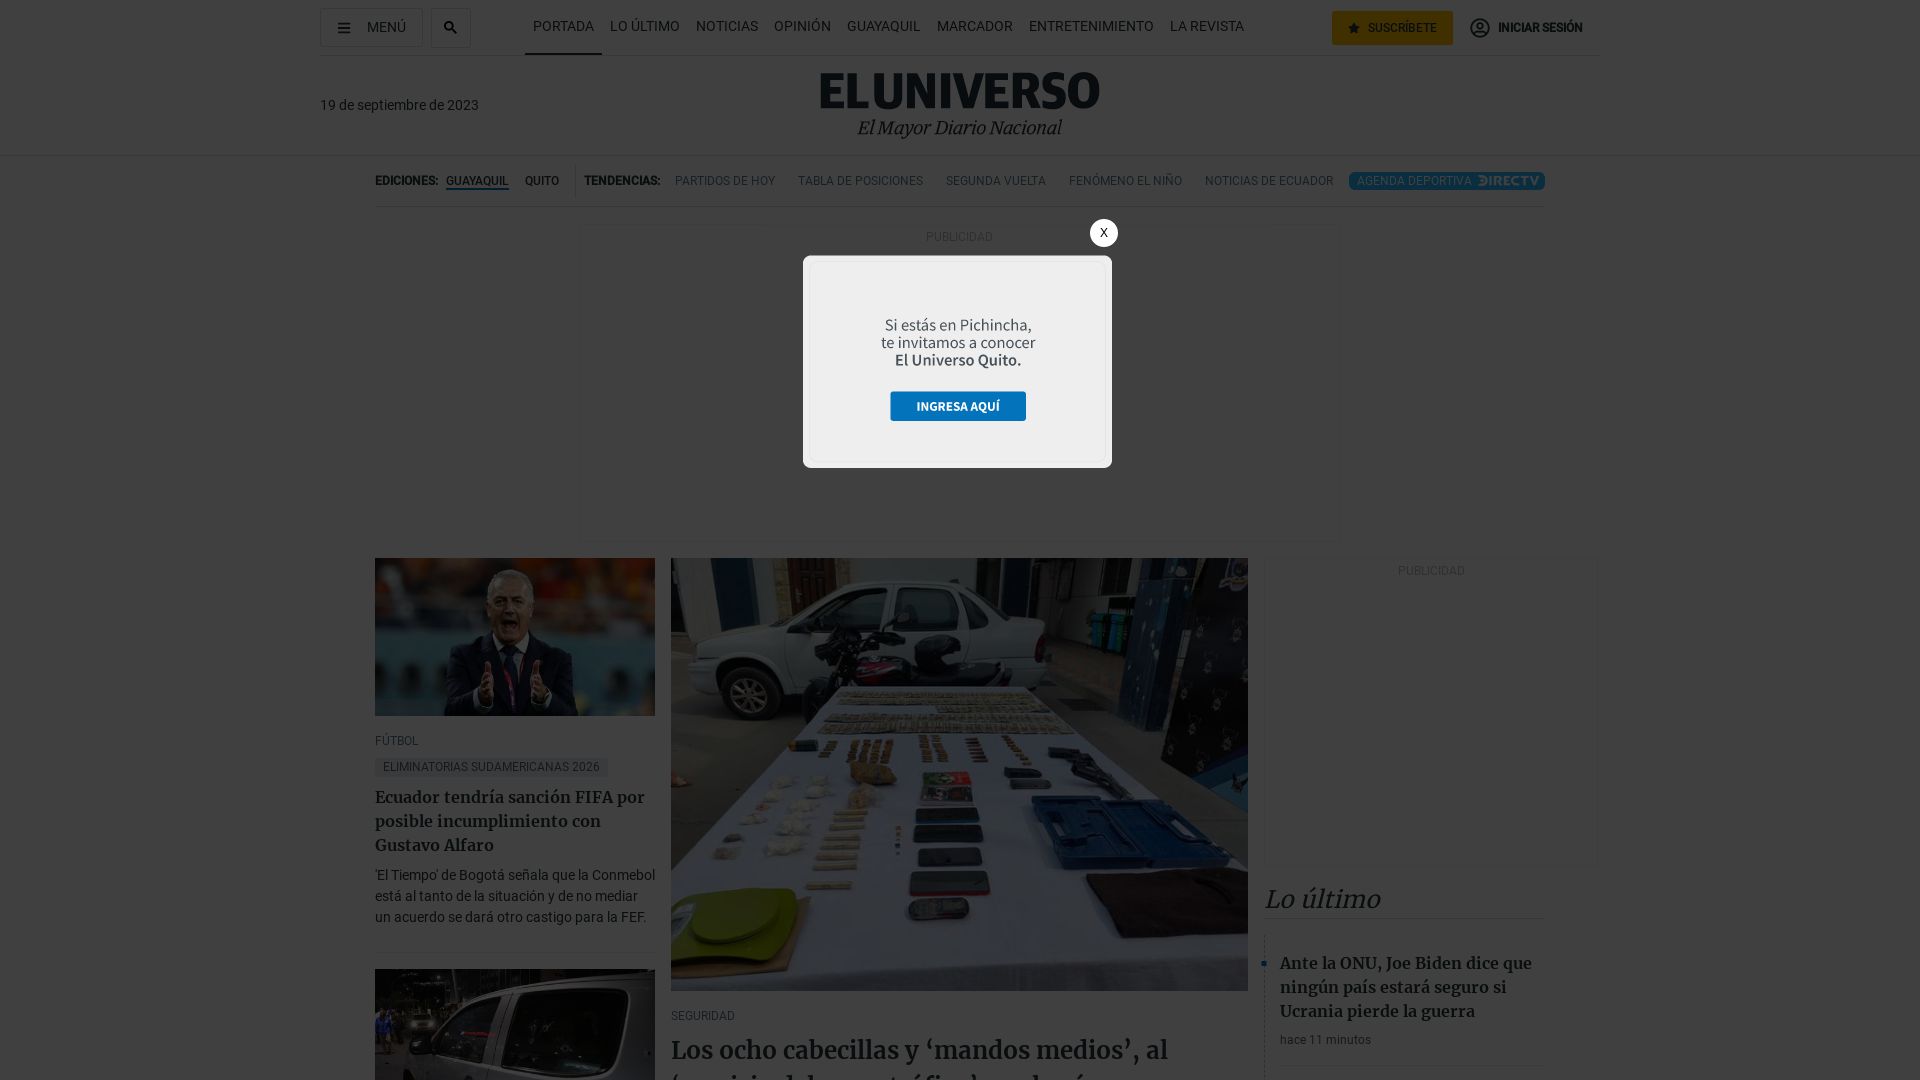 网站状态 eluniverso.com 是  在线的